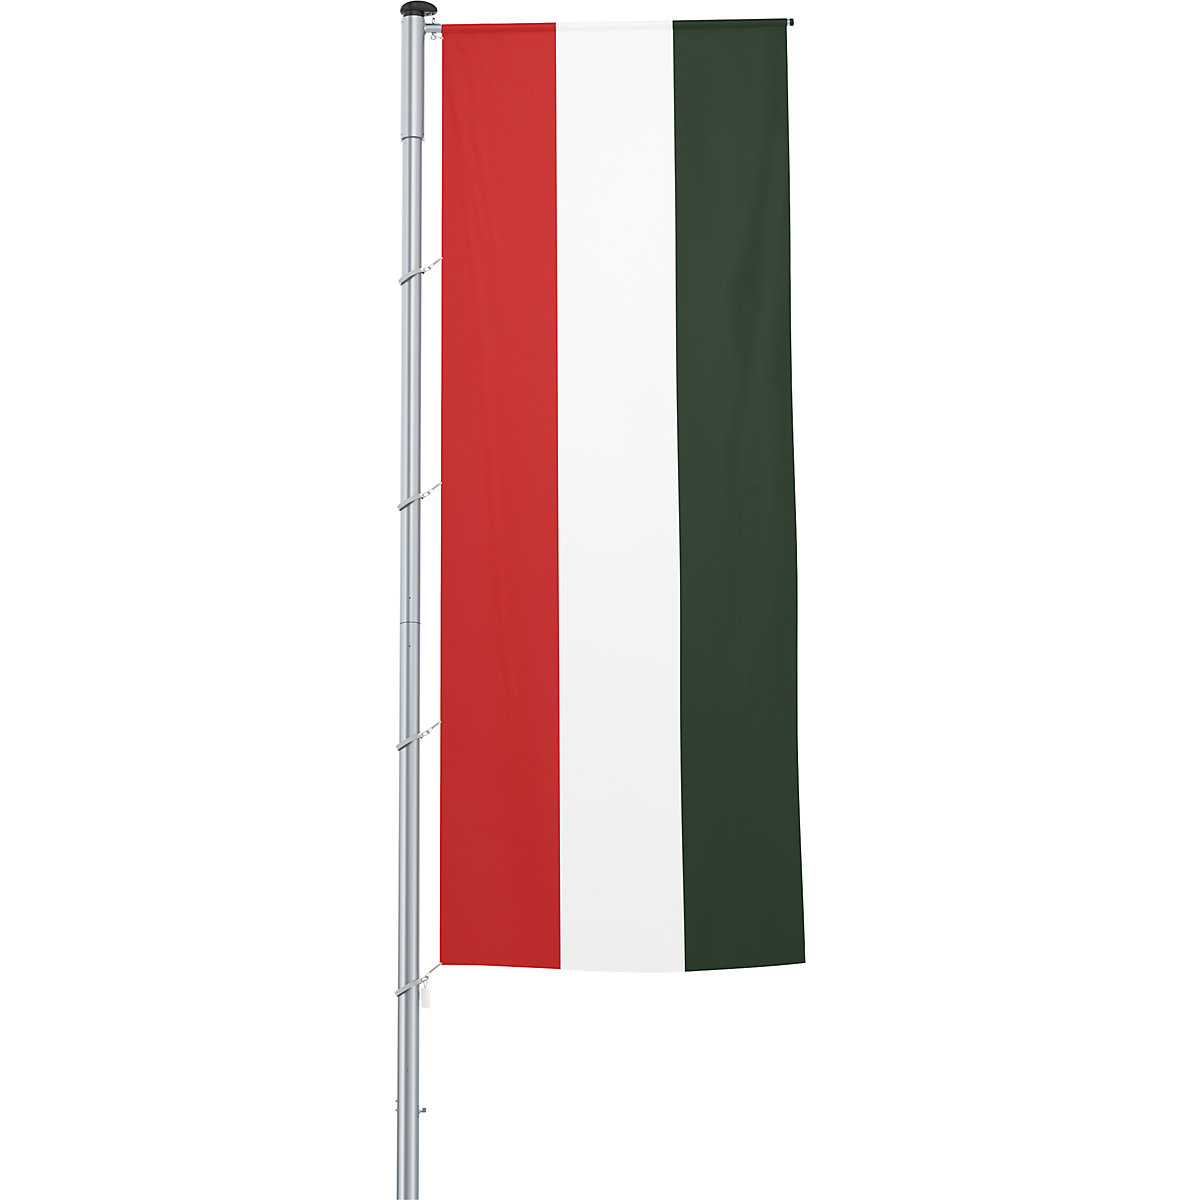 Gémes zászló/országzászló – Mannus, méret 1,2 x 3 m, Magyarország-17